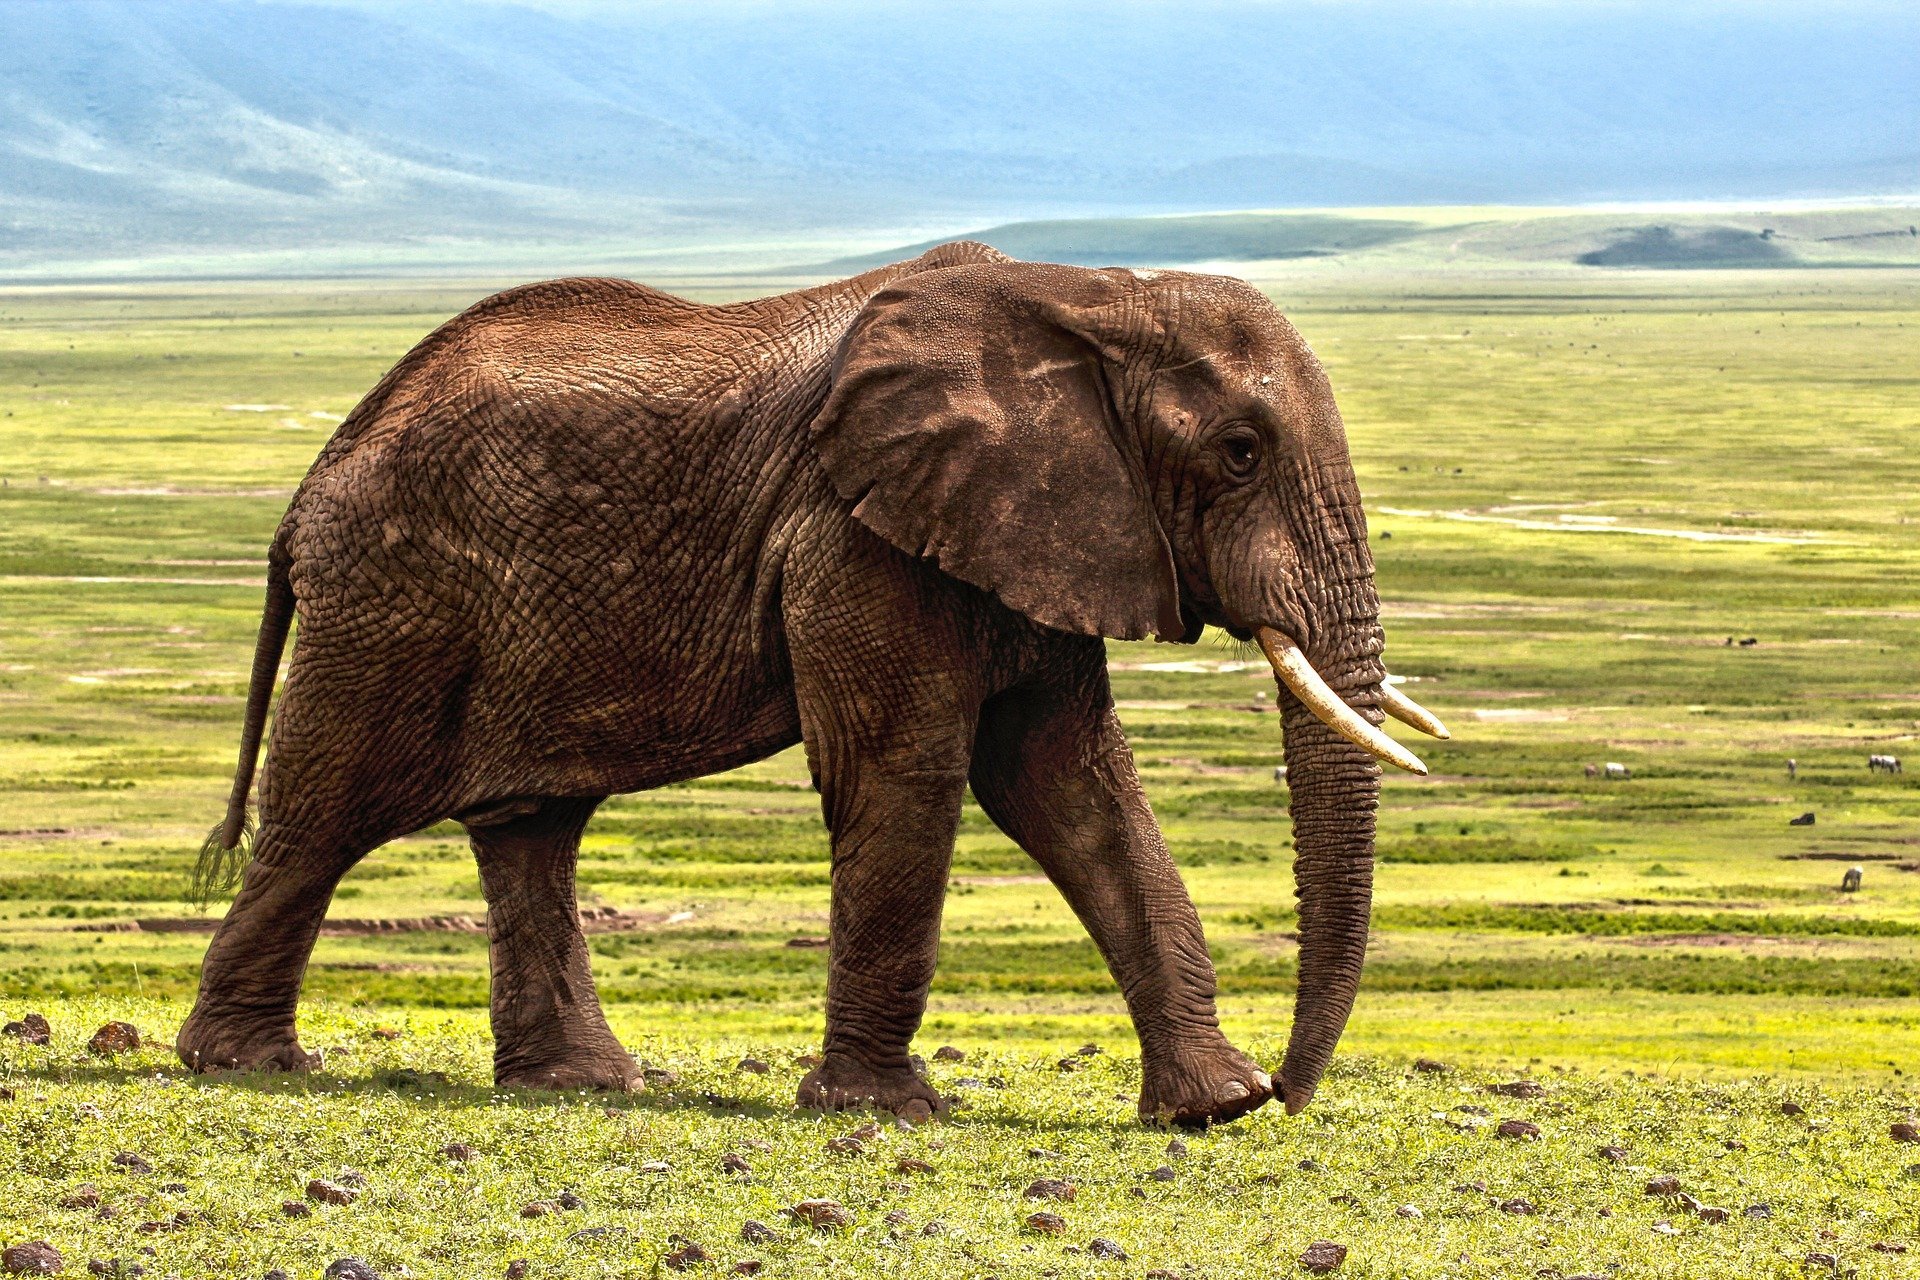 quiz z hiszpańskiego zwierzęta animales numeros test wiedzy łatwy słoń elefante